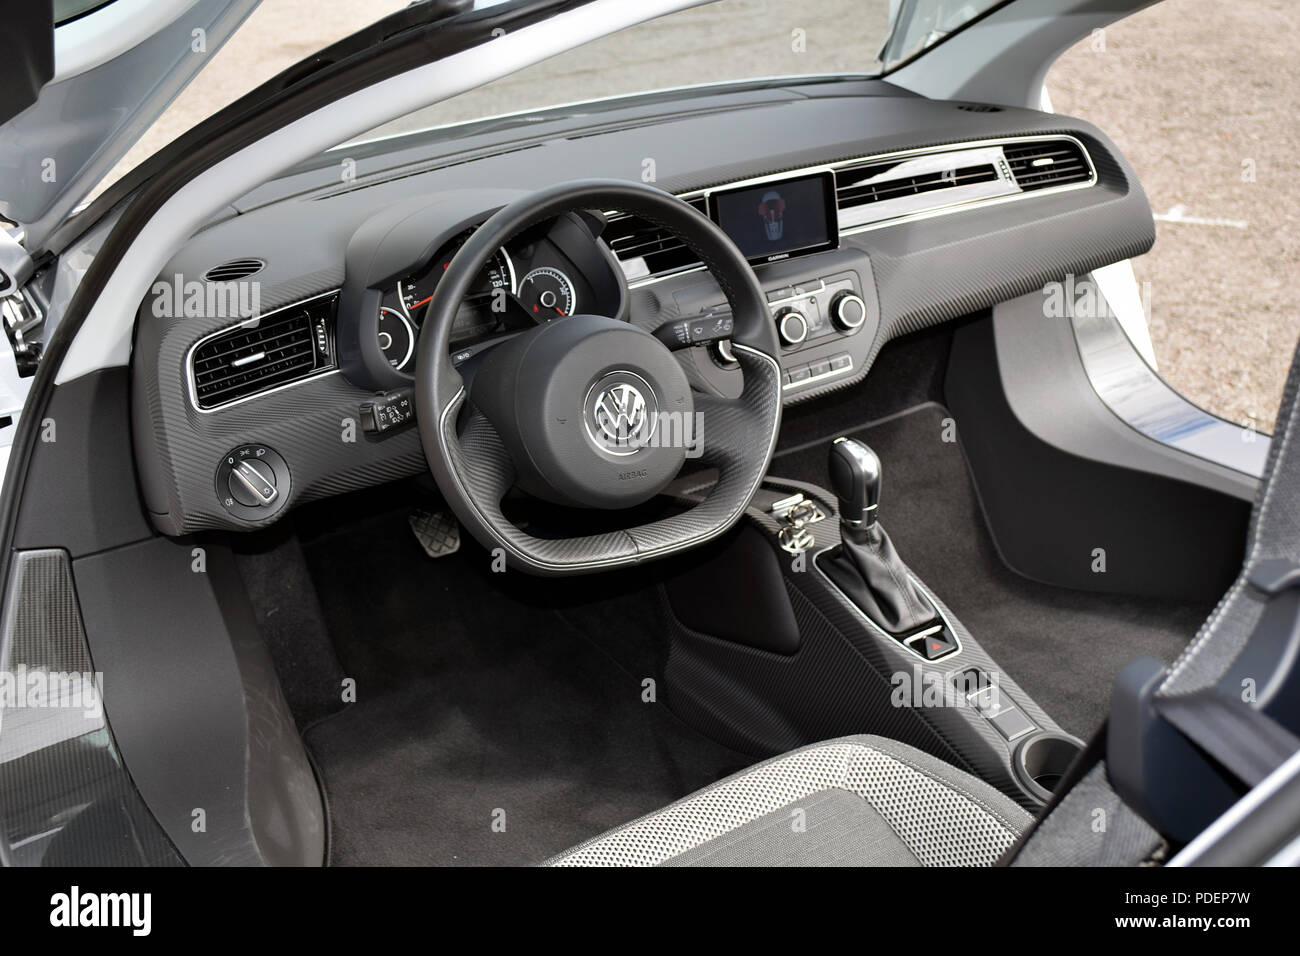 2014 Volkswagen XL1 hybrid interior Stock Photo